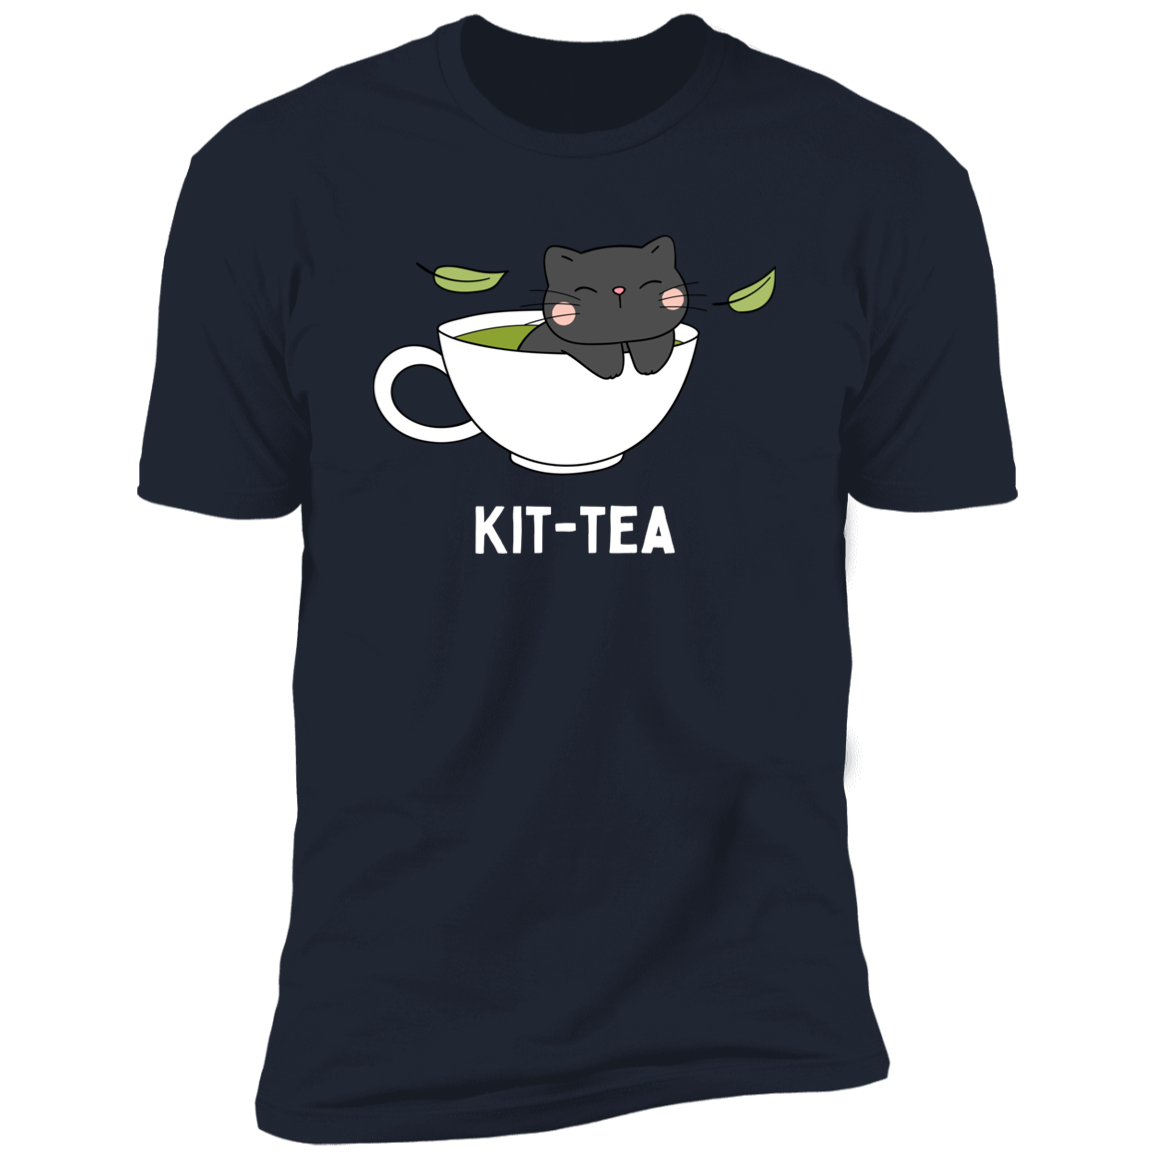 Kitt-Tea T-Shirt, kitty tea shirt, Cat Shirt for humans, funny cat shirt, in navy blue